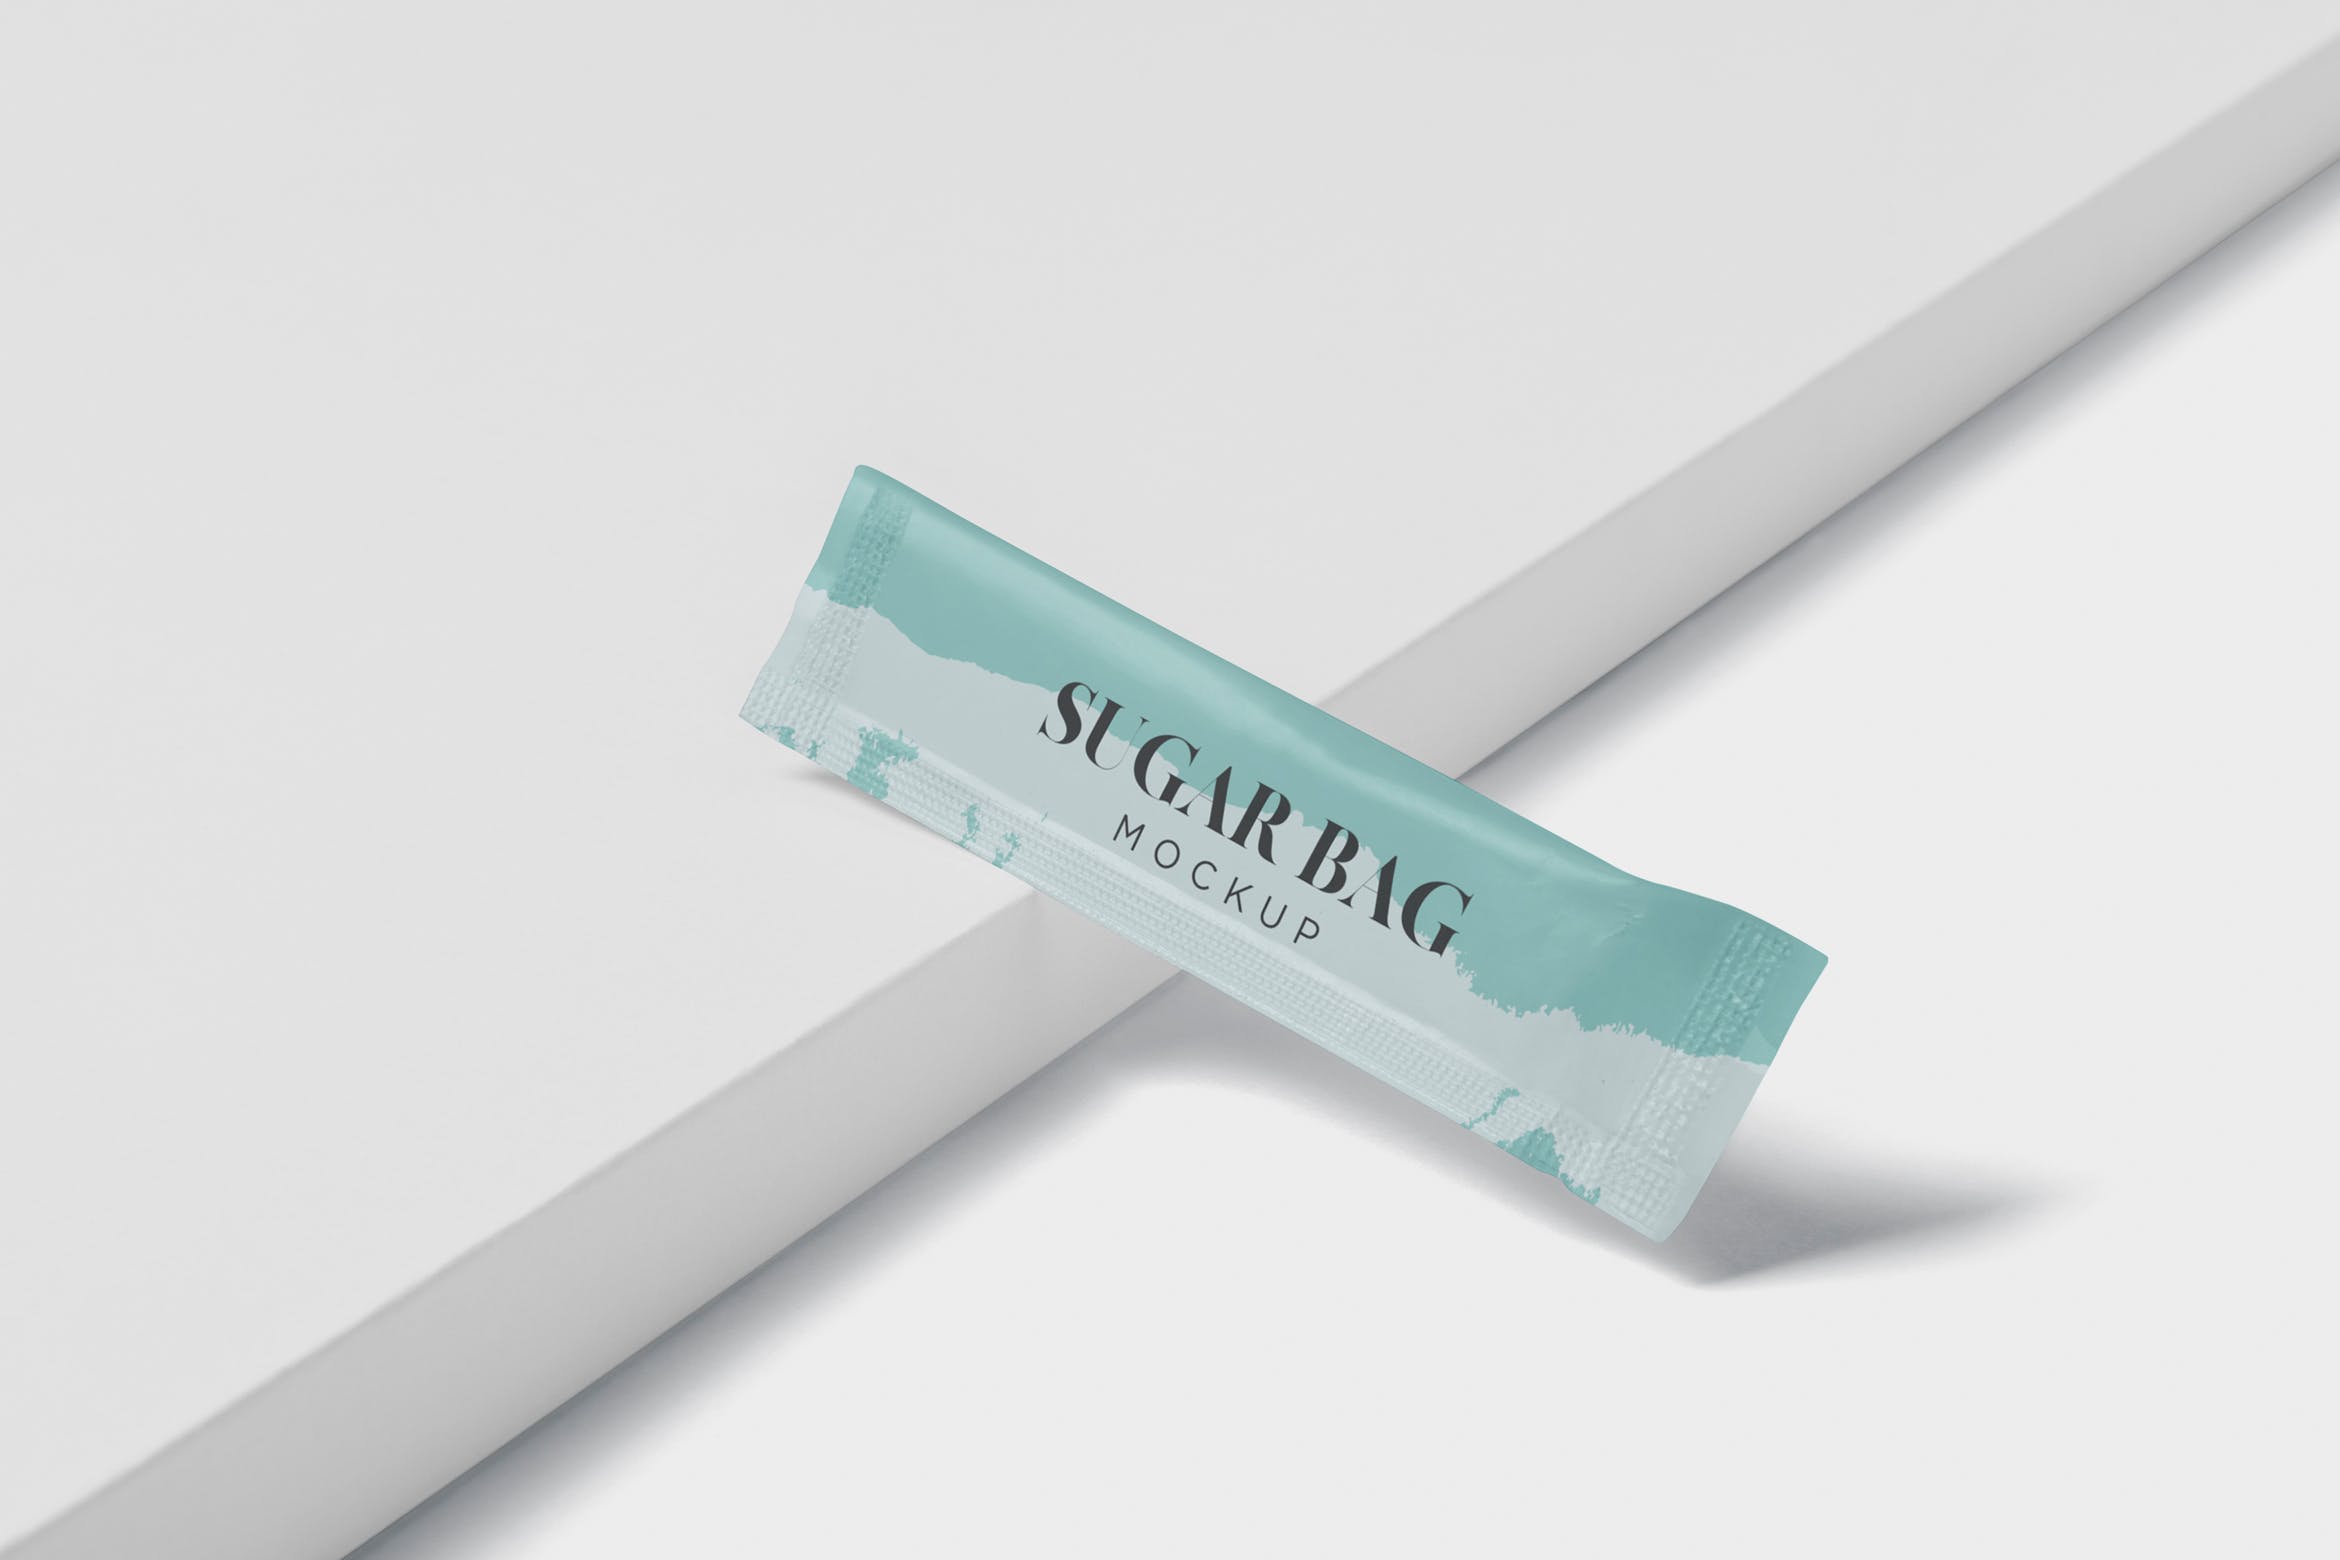 白砂糖长条包装纸袋外观设计图第一素材精选 Sugar Bag Mockup – Slim Rectangle插图